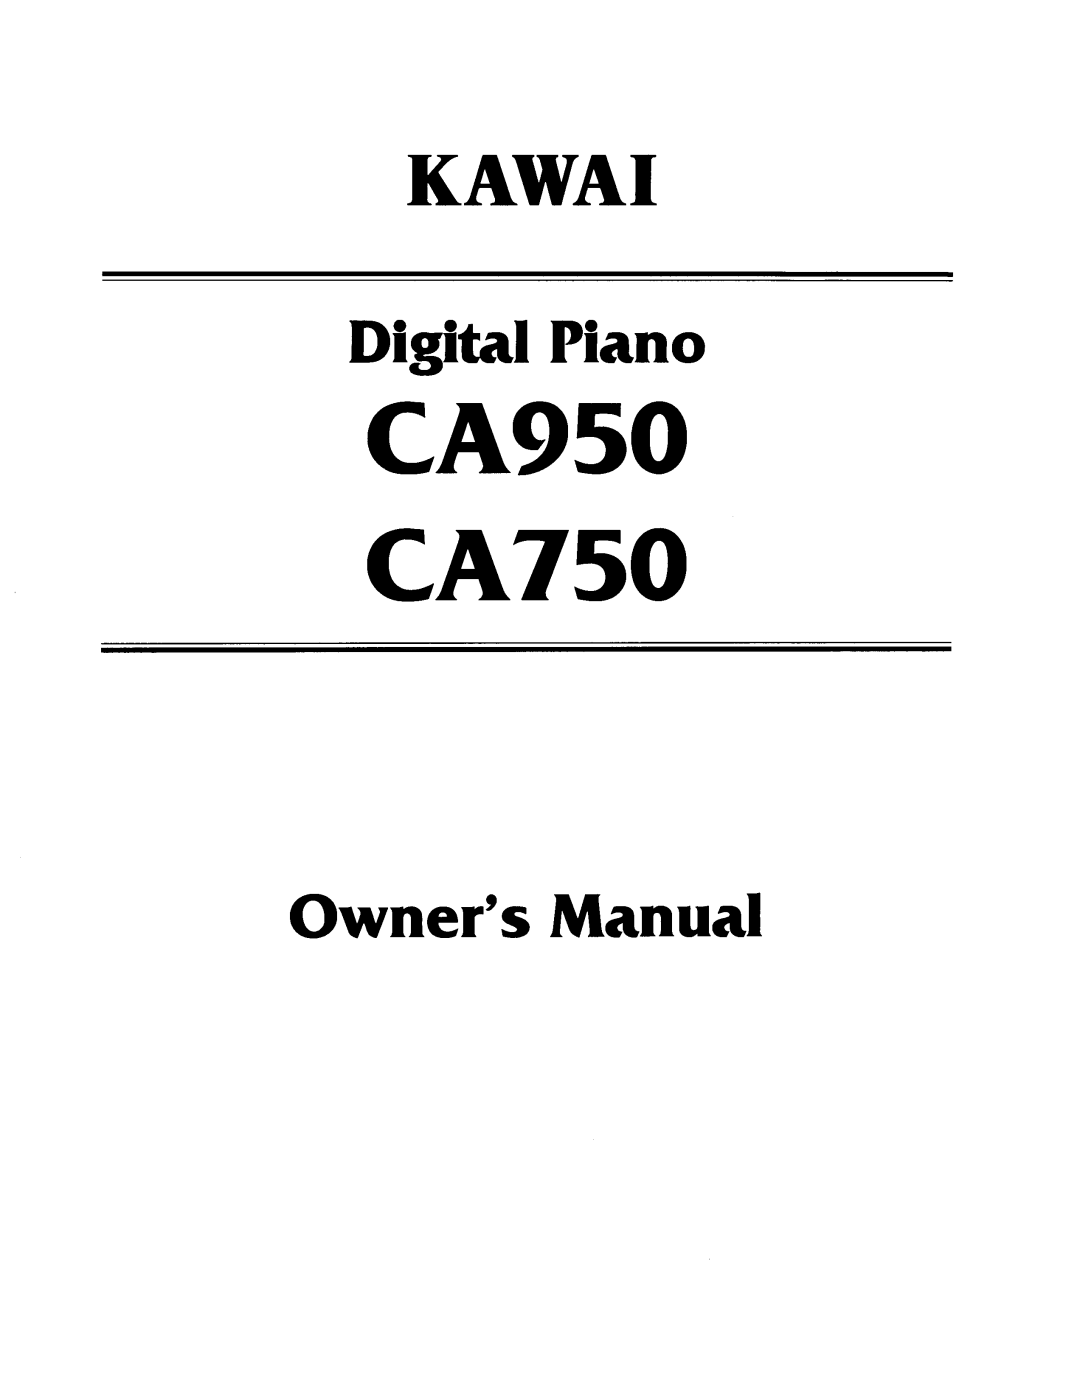 Kawai CA750, CA950 manual 